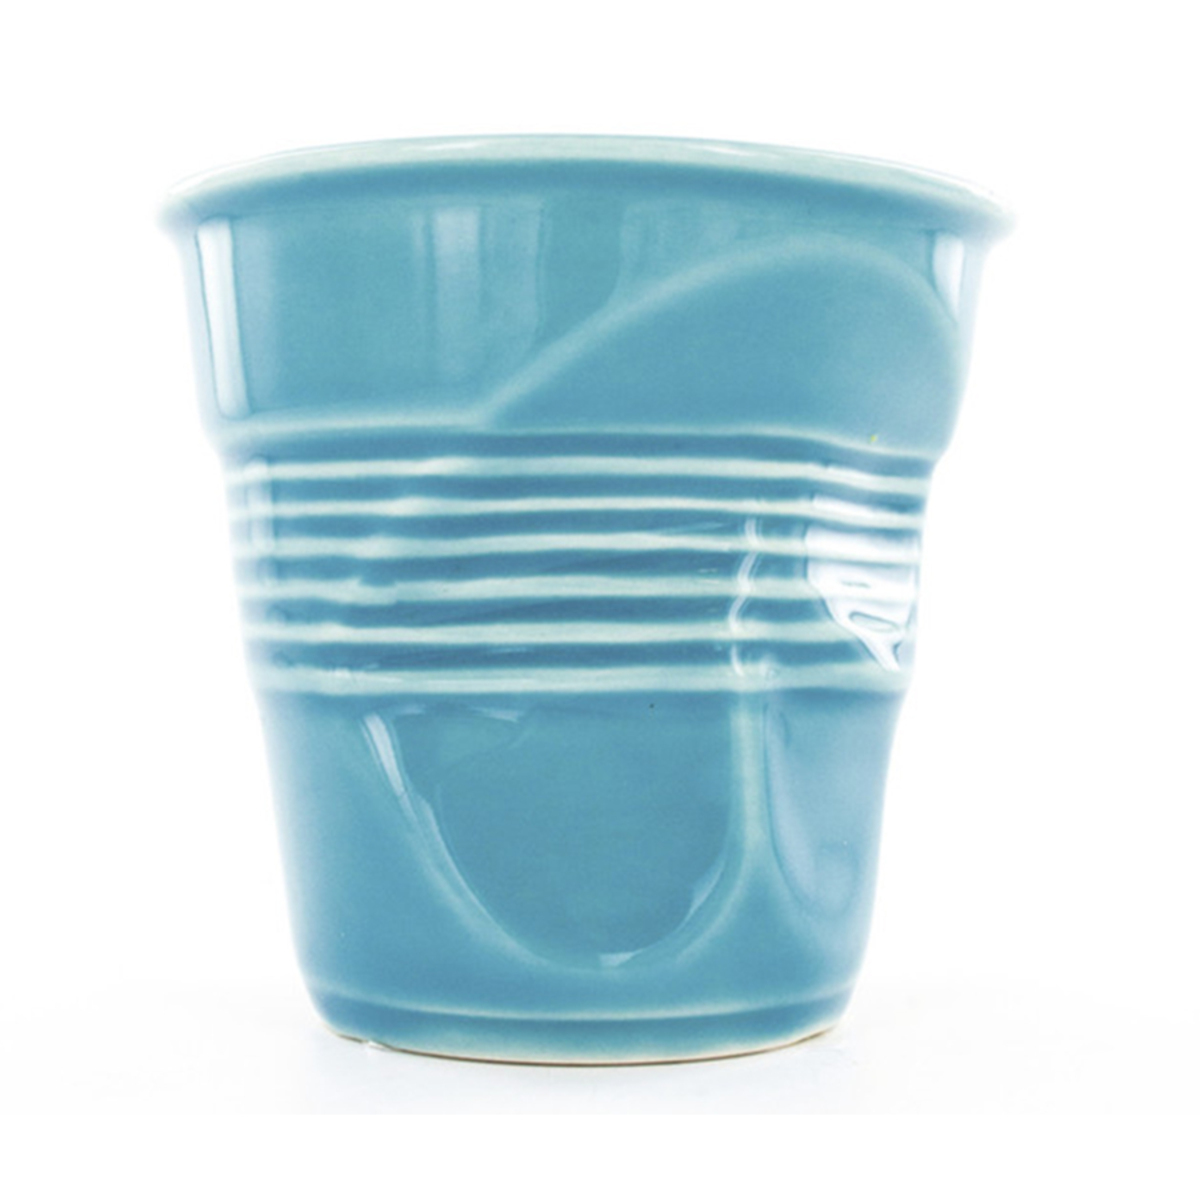 Gobelet froissé expresso en porcelaine couleur bleu turquoise Revol 8 cl